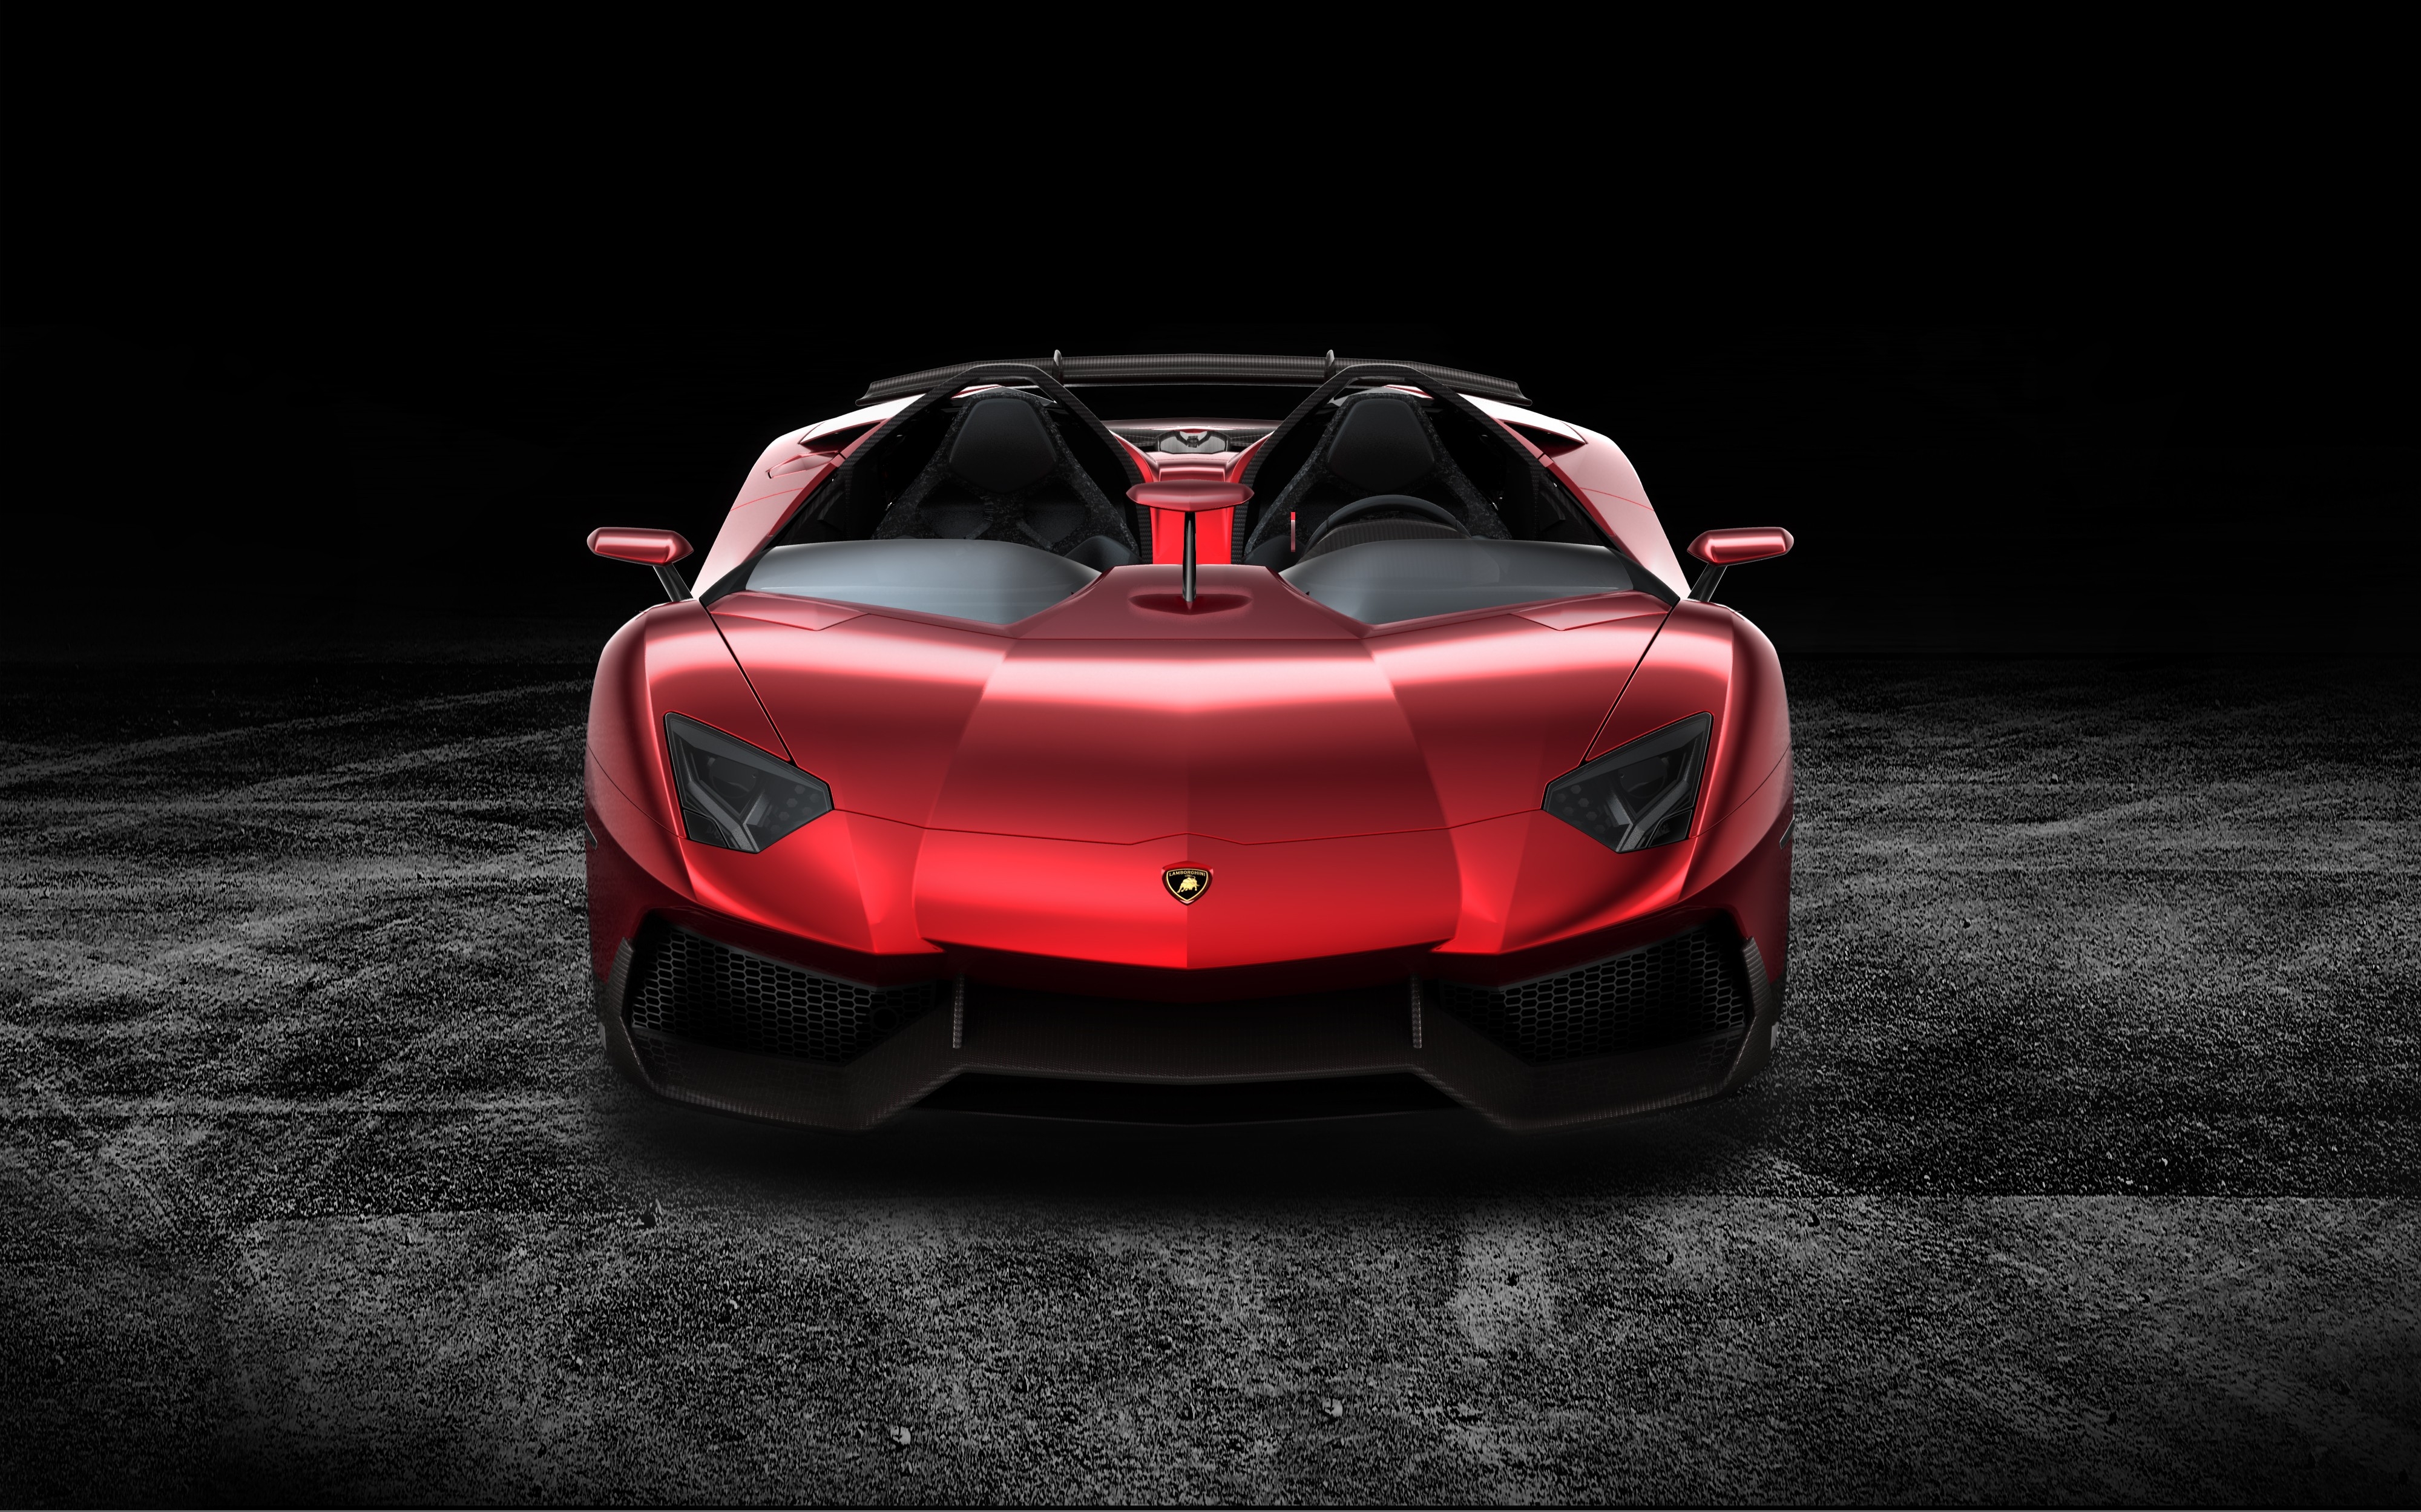 免费照片多汁的红色兰博基尼Aventador在一个黑暗的背景上